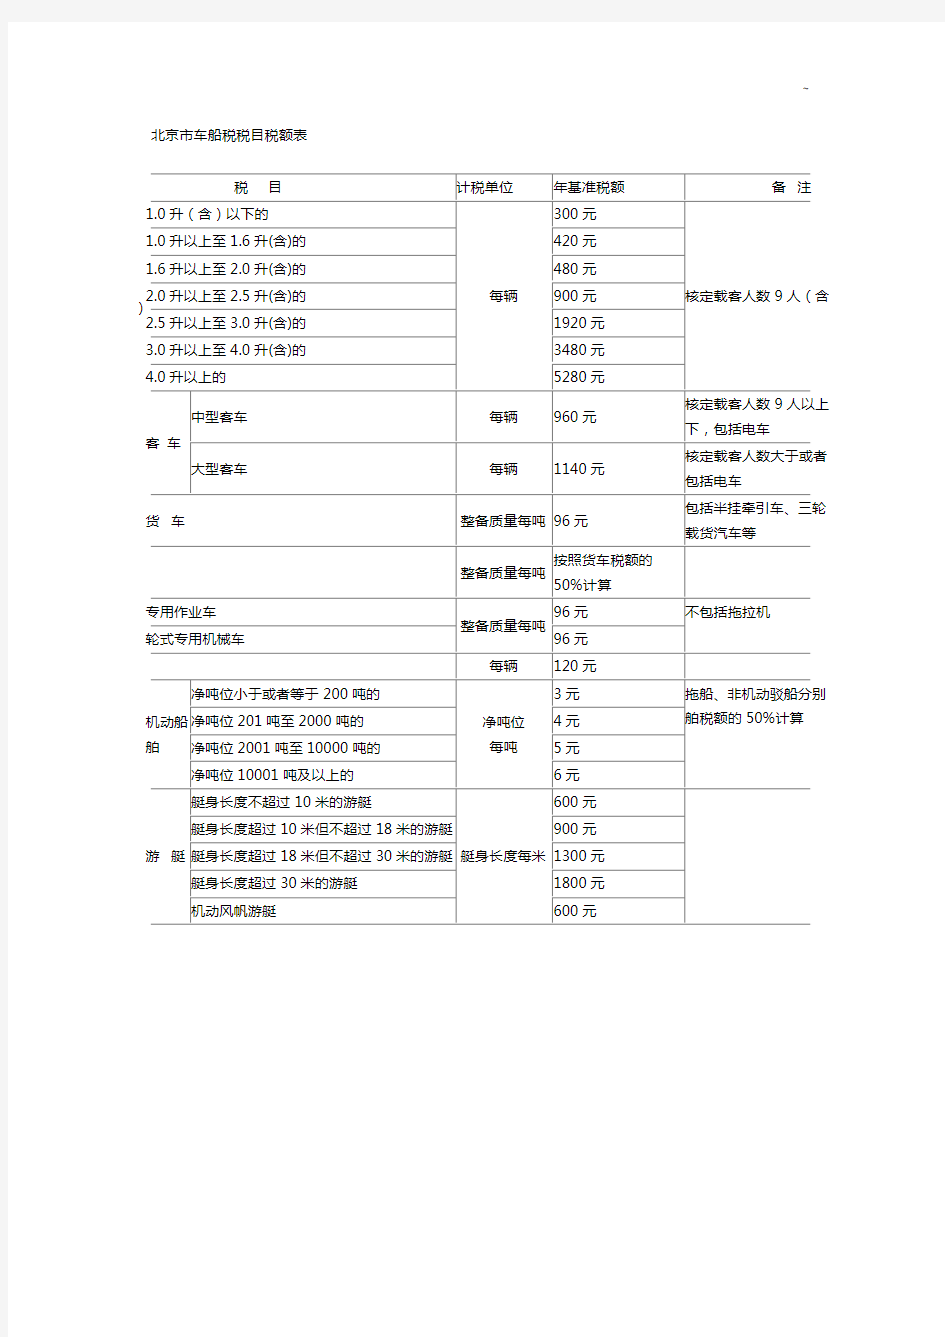 北京地区车船税税目税额表